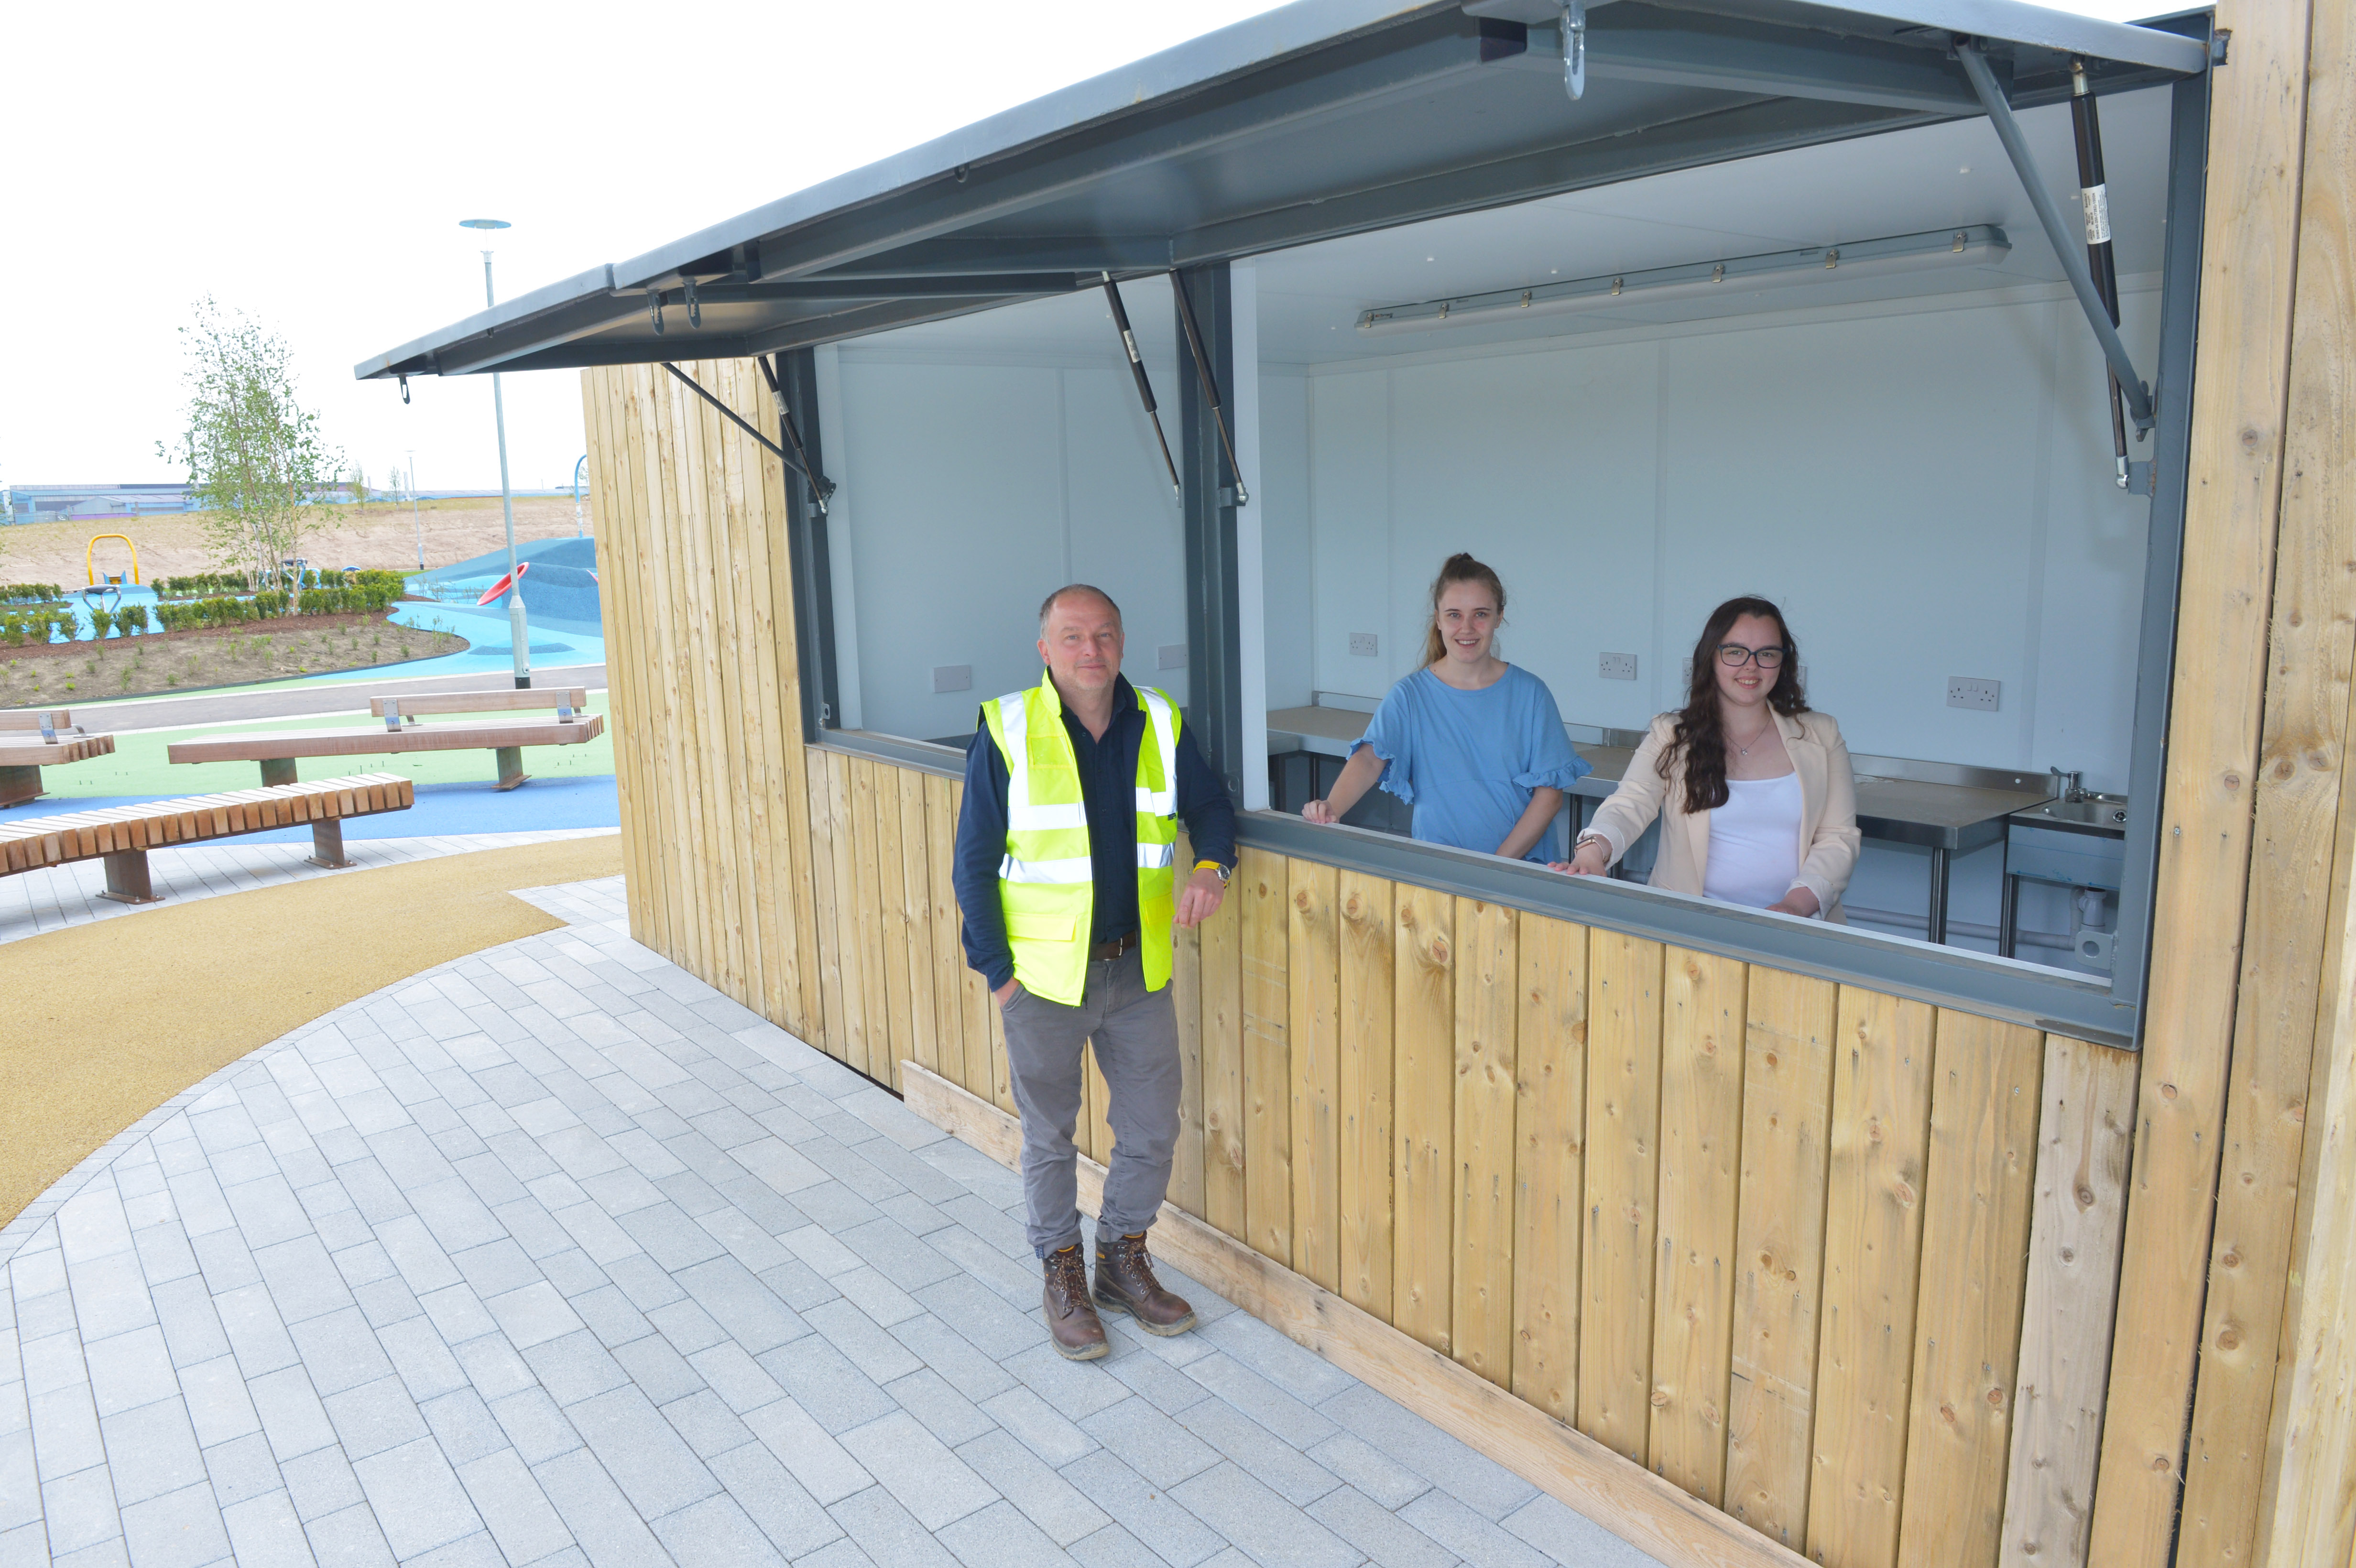 New catering kiosk for Ravenscraig public park